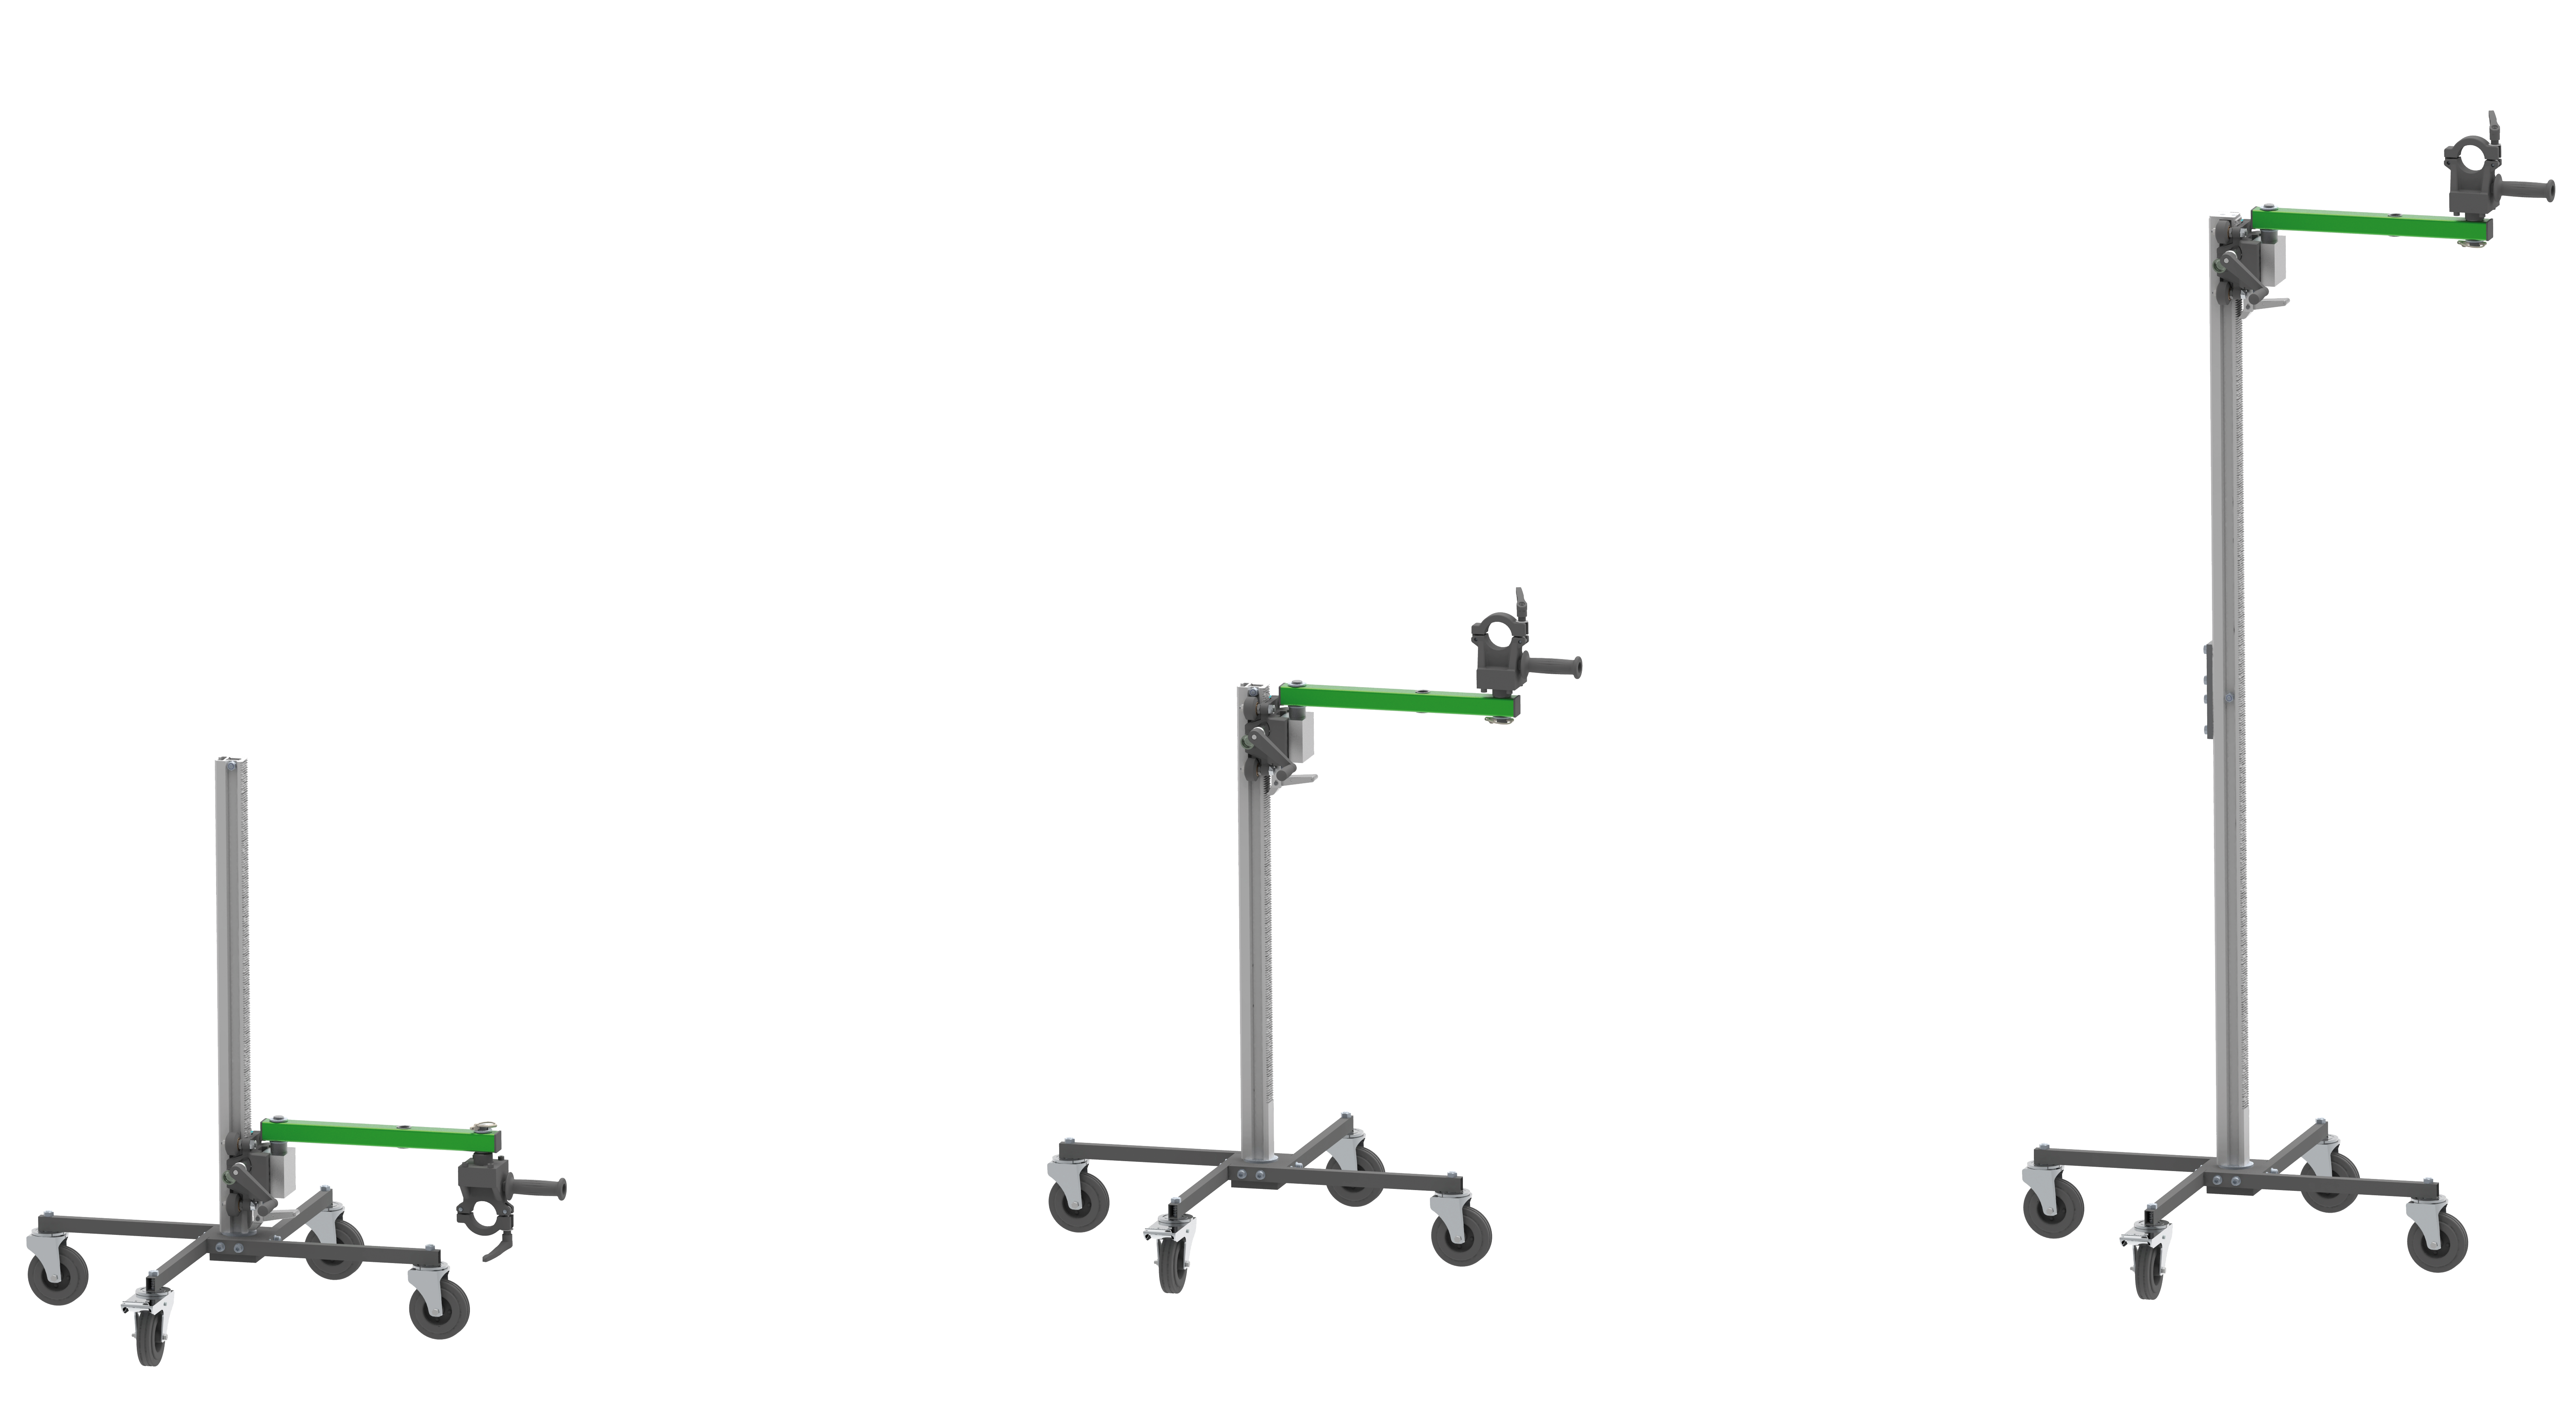 Supporto carotaggio con carrello “Bohrwurm” EBW 1300

Vedi accessorio: braccio di estensione per lavoro fino a 2,30 mt di altezza (Art.3582G000)